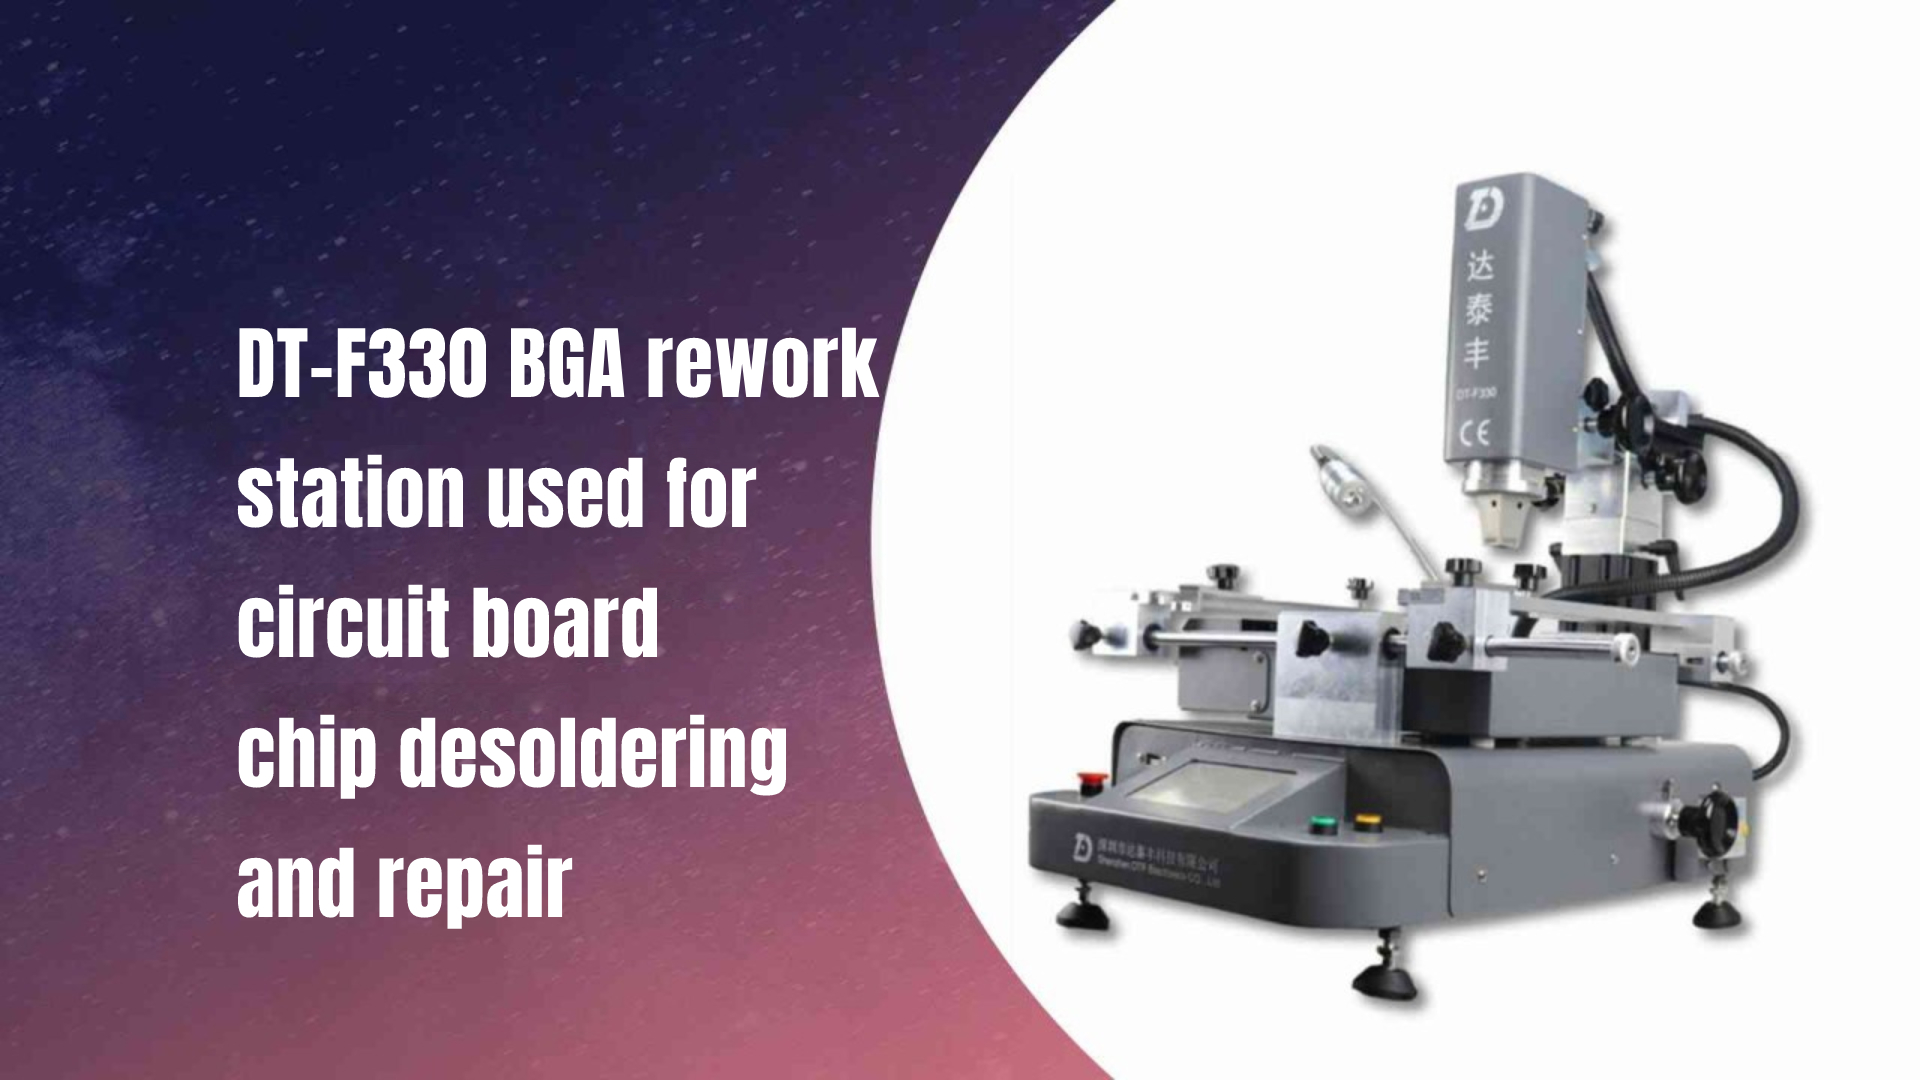 Trạm làm lại DT-F330 BGA được sử dụng để tẩy và sửa chữa chip bảng mạch